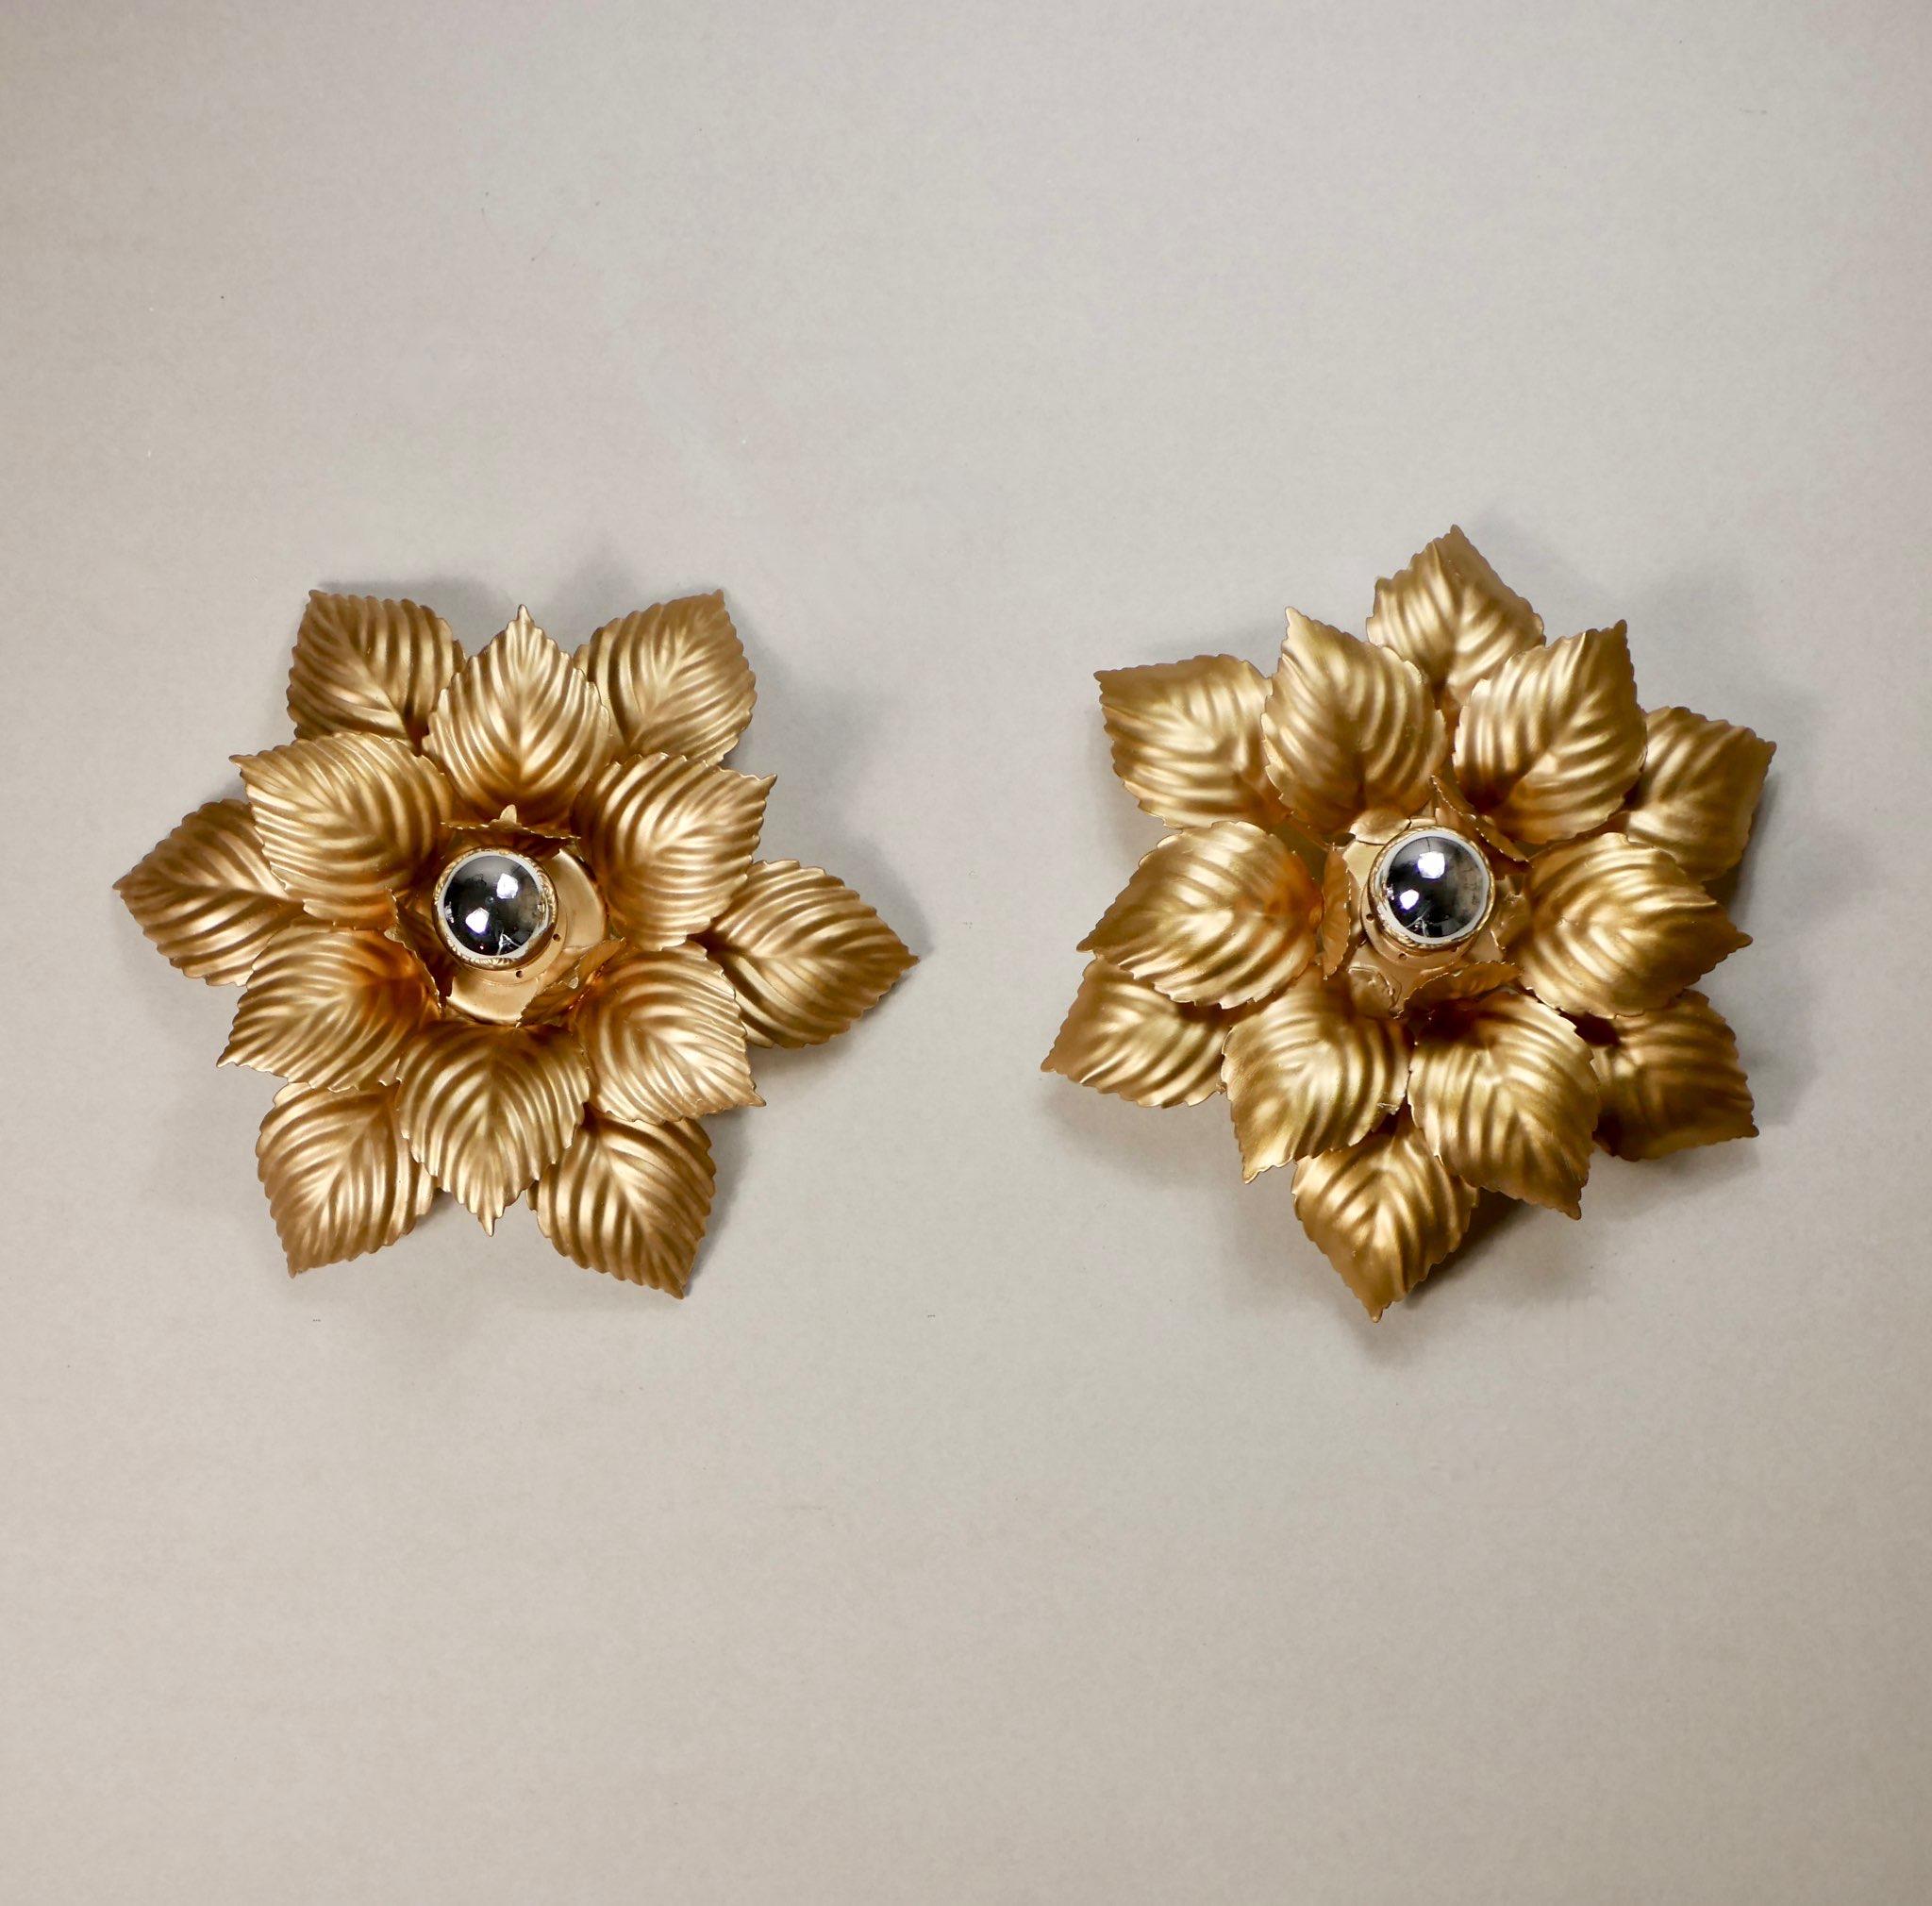 Superbe paire d'appliques florales dorées fabriquées par Masca dans les années 1980 en Italie.
Légèrement différent.
Dimensions : diamètre 40cm, profondeur 14cm